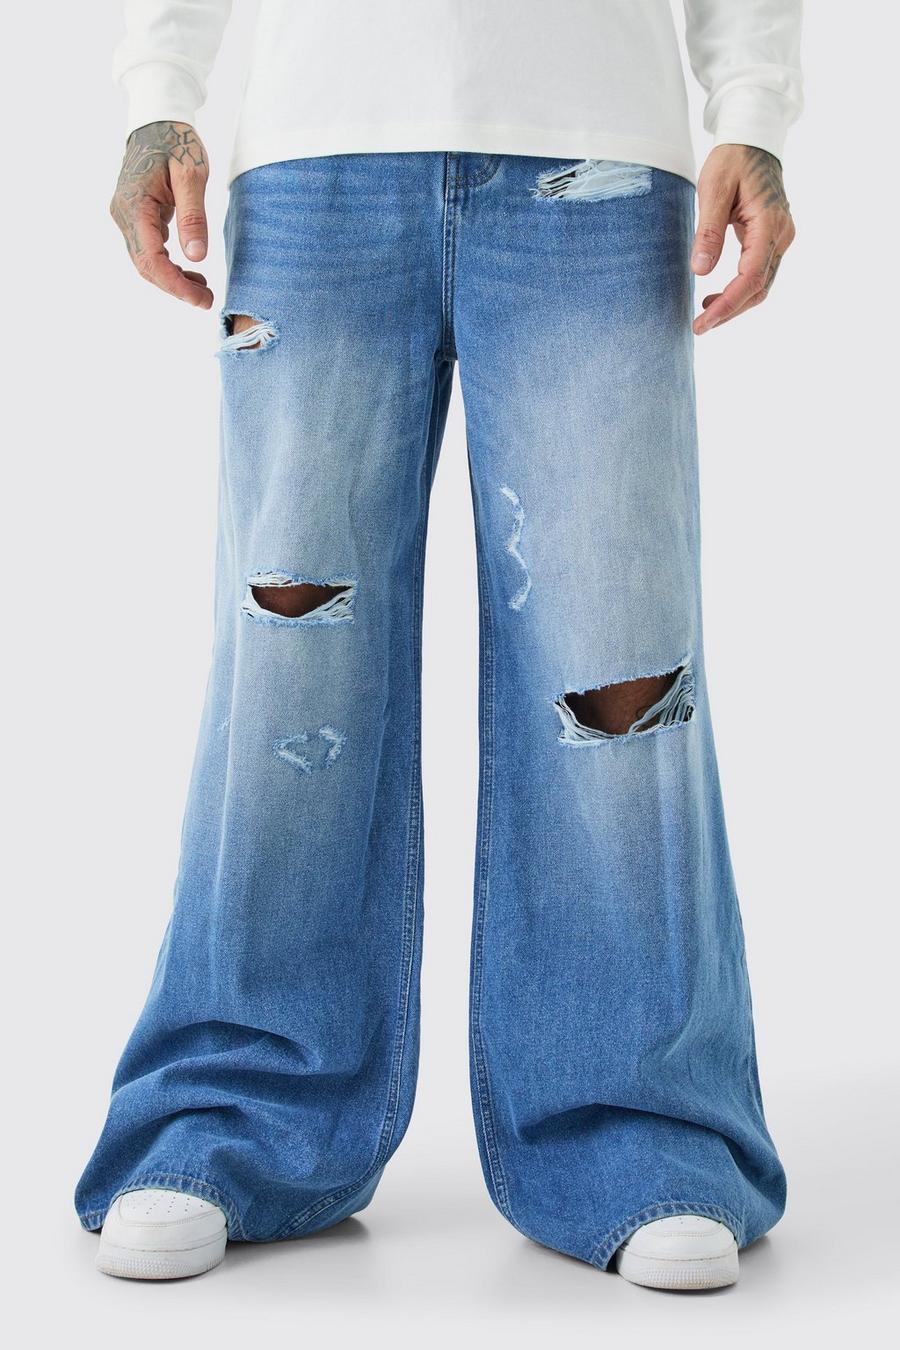 Tall lockere Jeans mit Applikation, Light blue